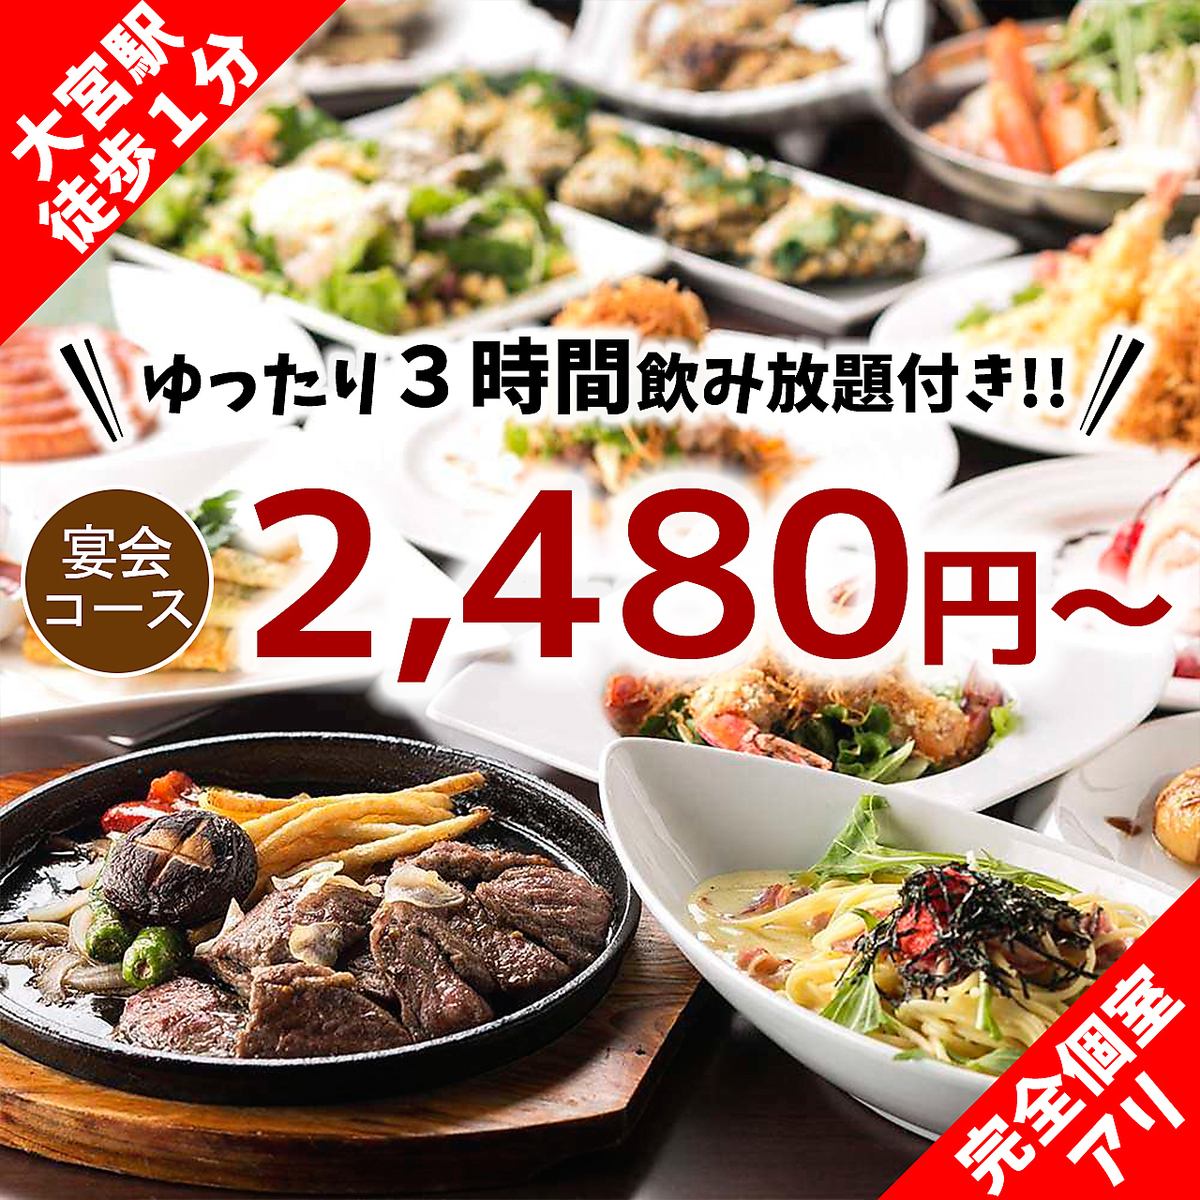 [大宫最低价] 2,480 日元起 3 小时无限畅饮宴会♪